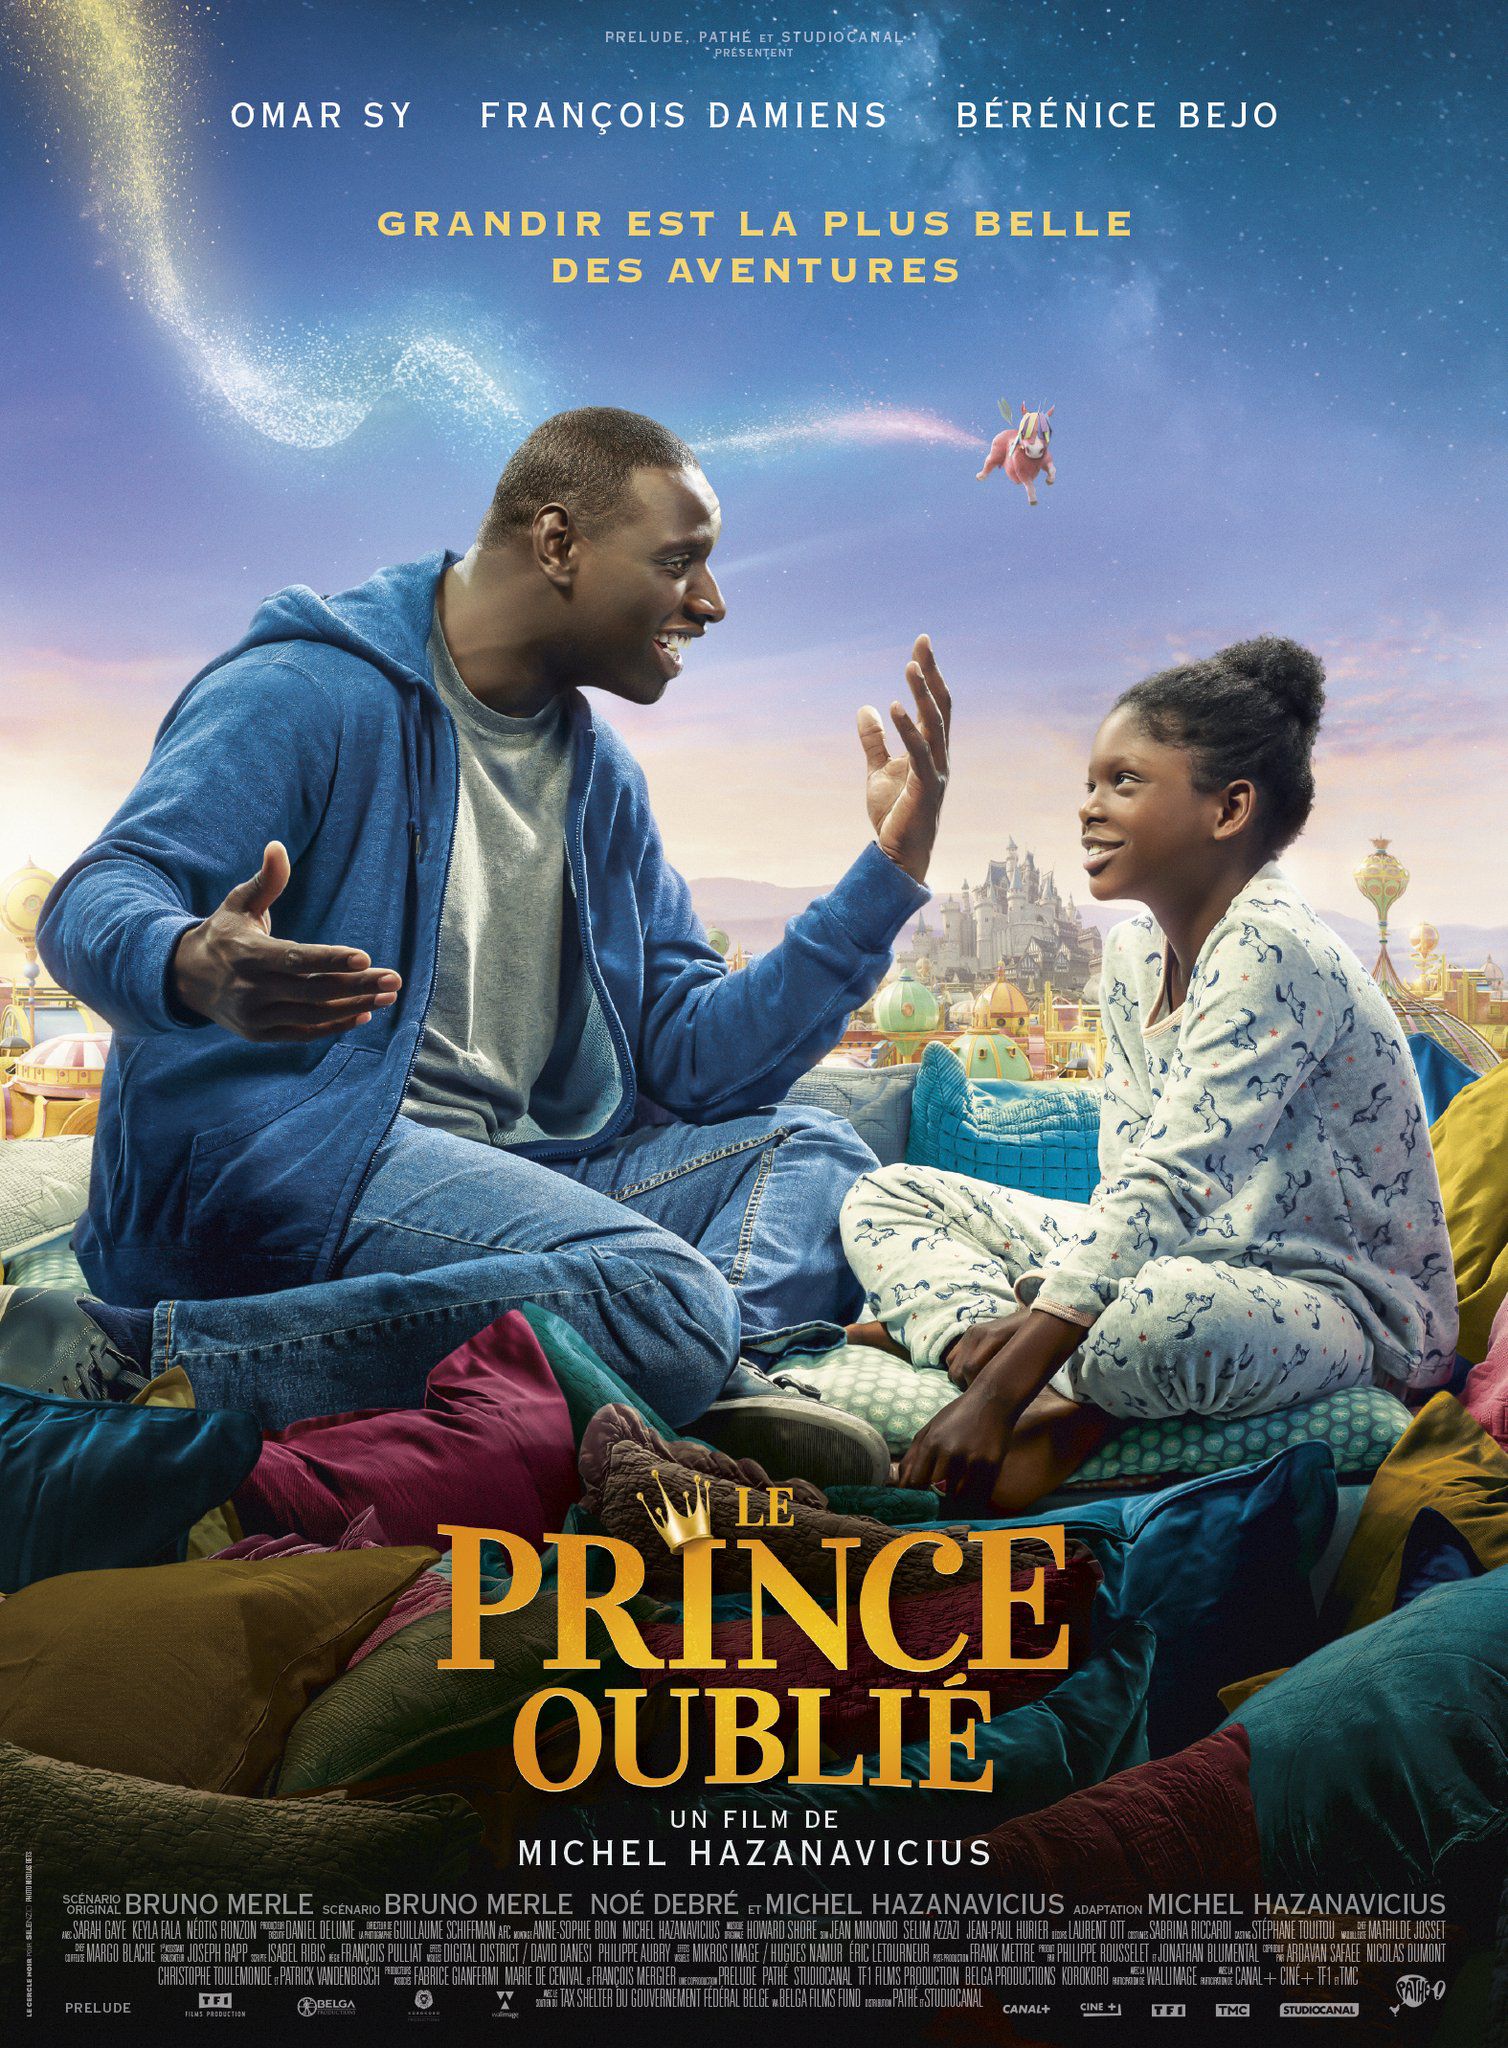 Le Prince oublié - Film (2020) streaming VF gratuit complet